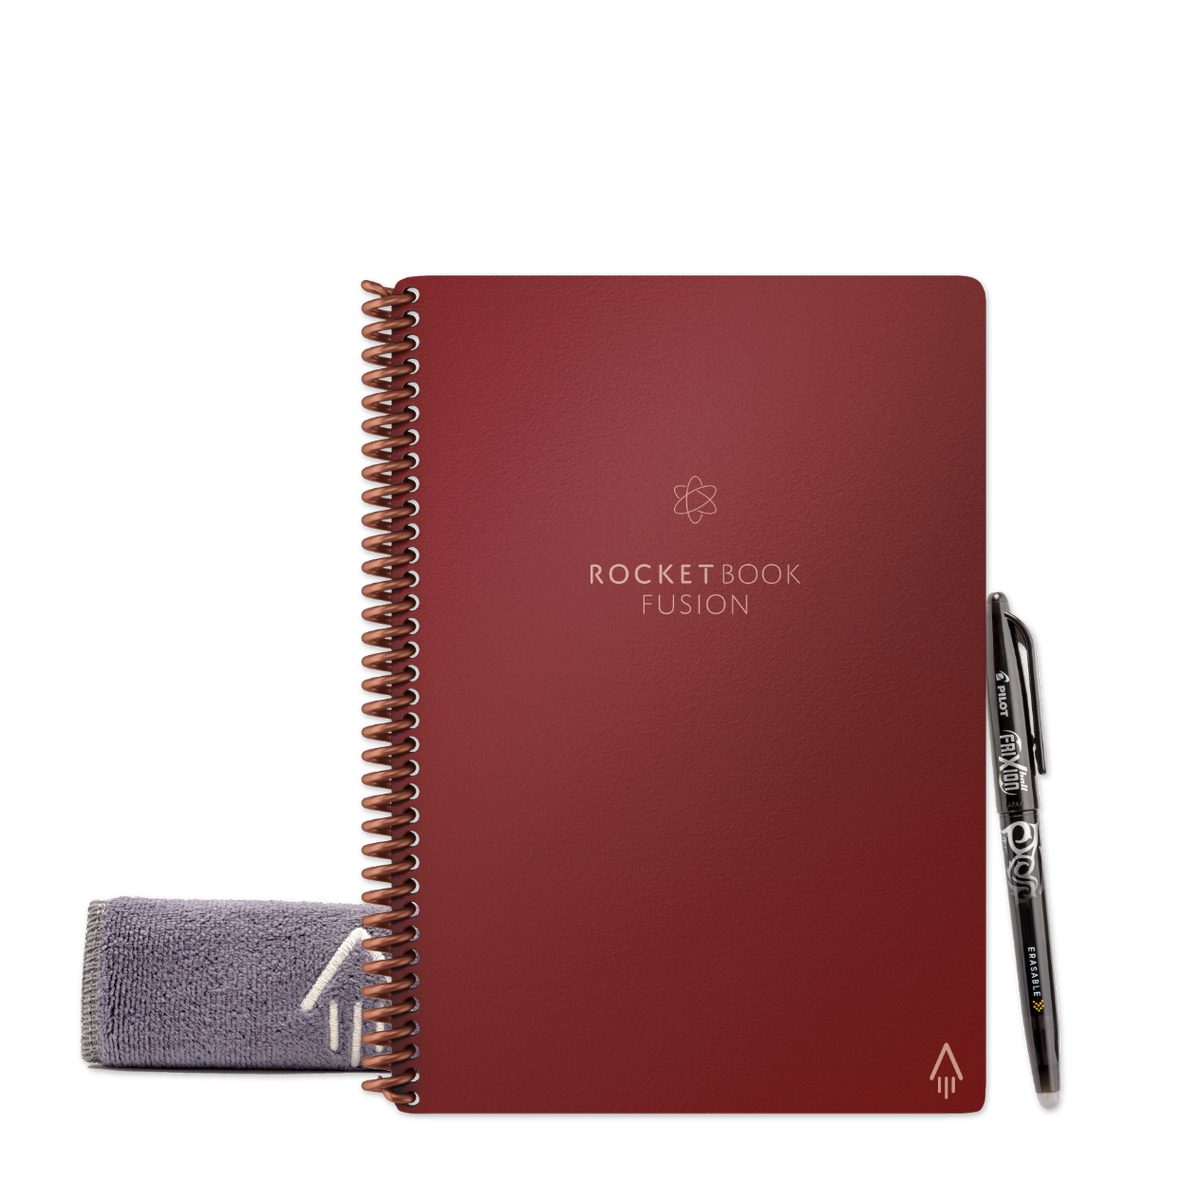 Rocket Tagging - mit Skizzenbuch und Everlast Rocketbook FUSION Book Notizbuch Symbol und App-Anbindung Notiz- Sky, Scarlet